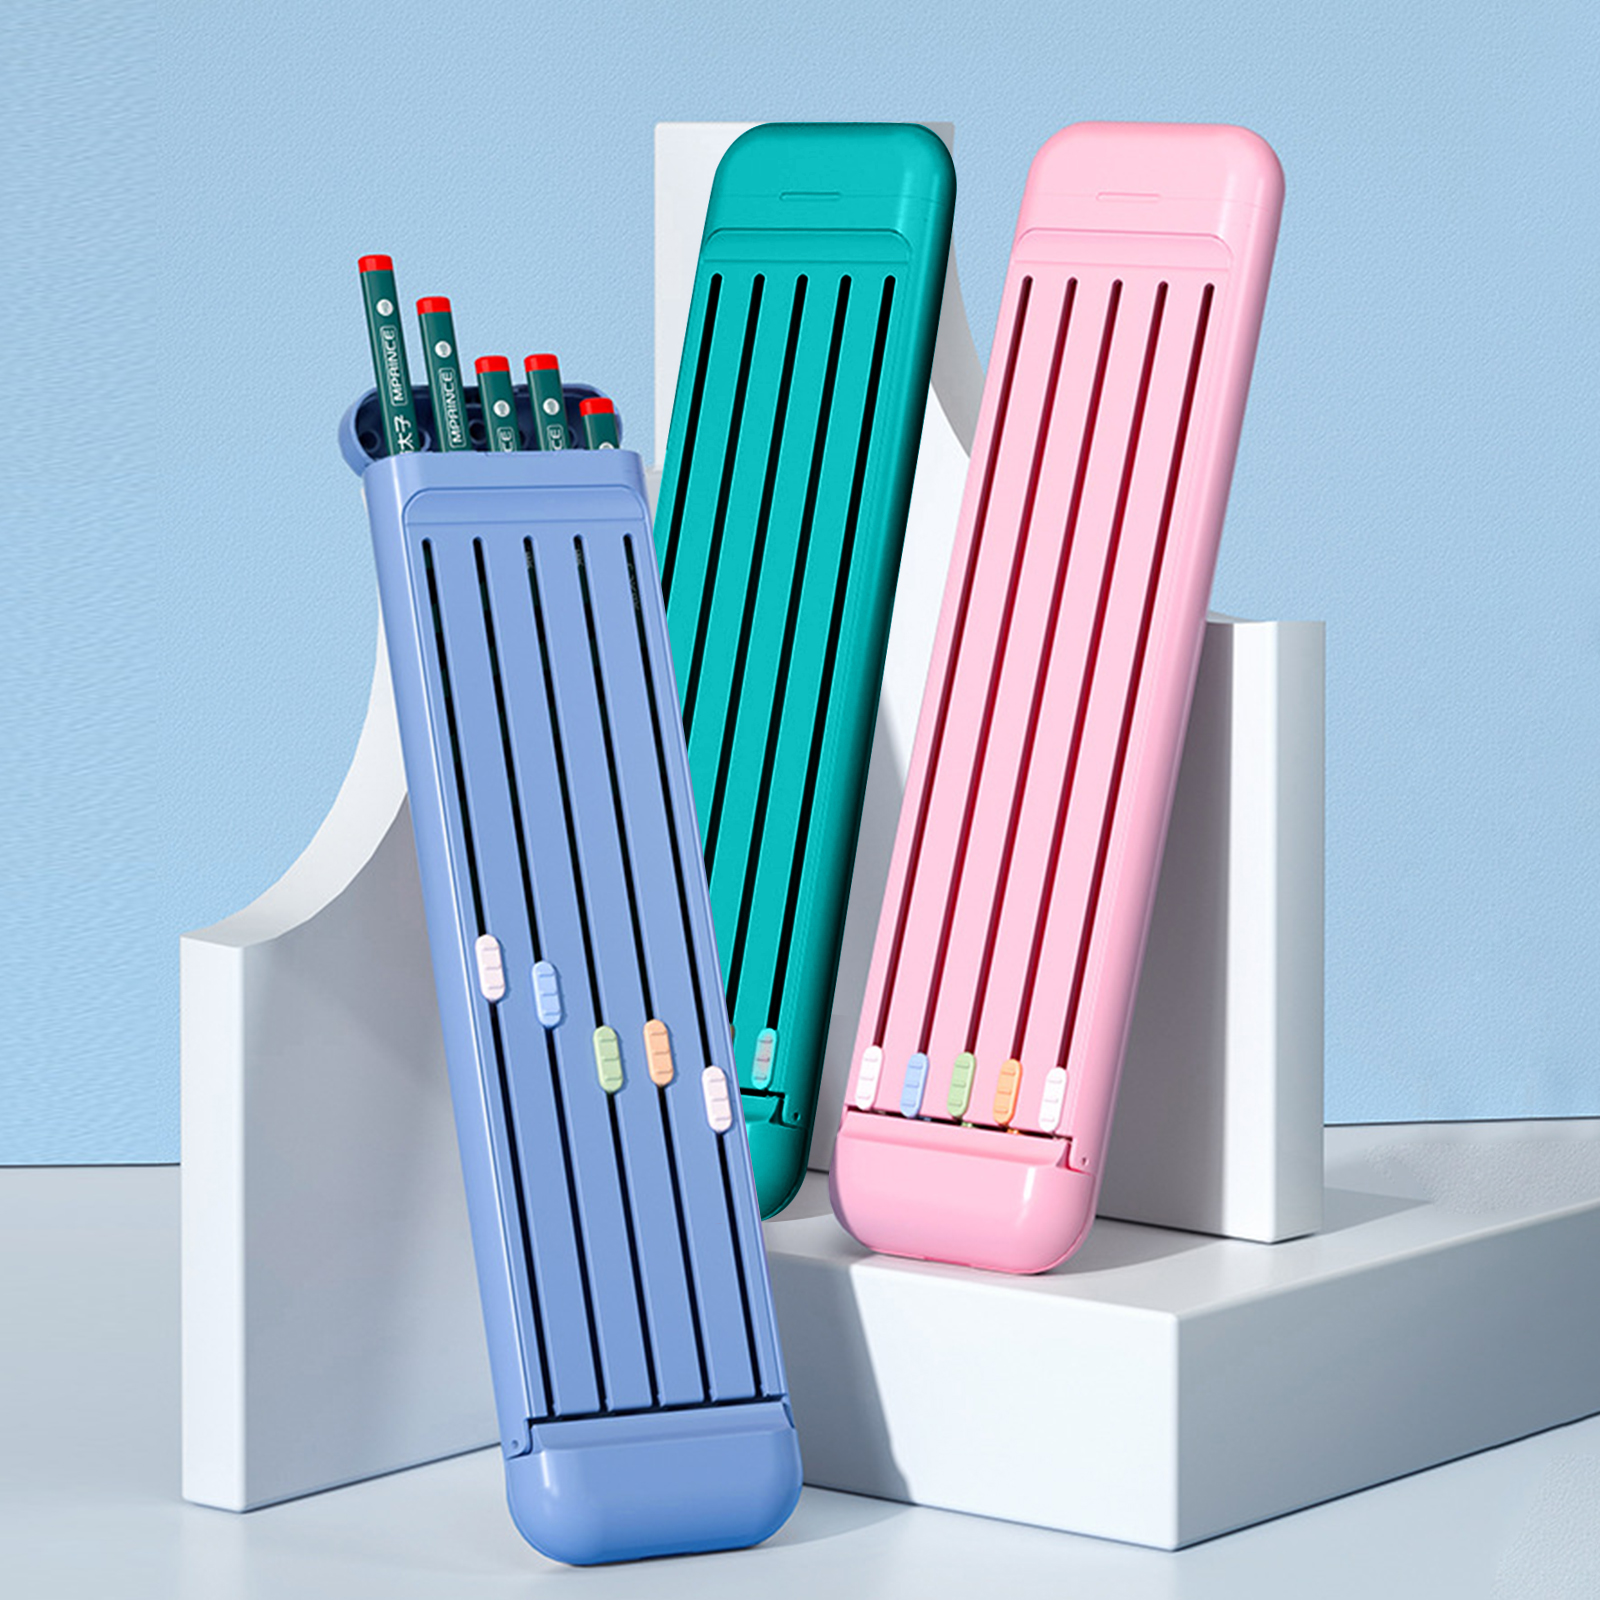 2022 새로운 휴대용 연필 편지지 상자 세트 눈금자 연필 지우개 4 조각 세트 작은 연필 상자 초등학교 학교 용품